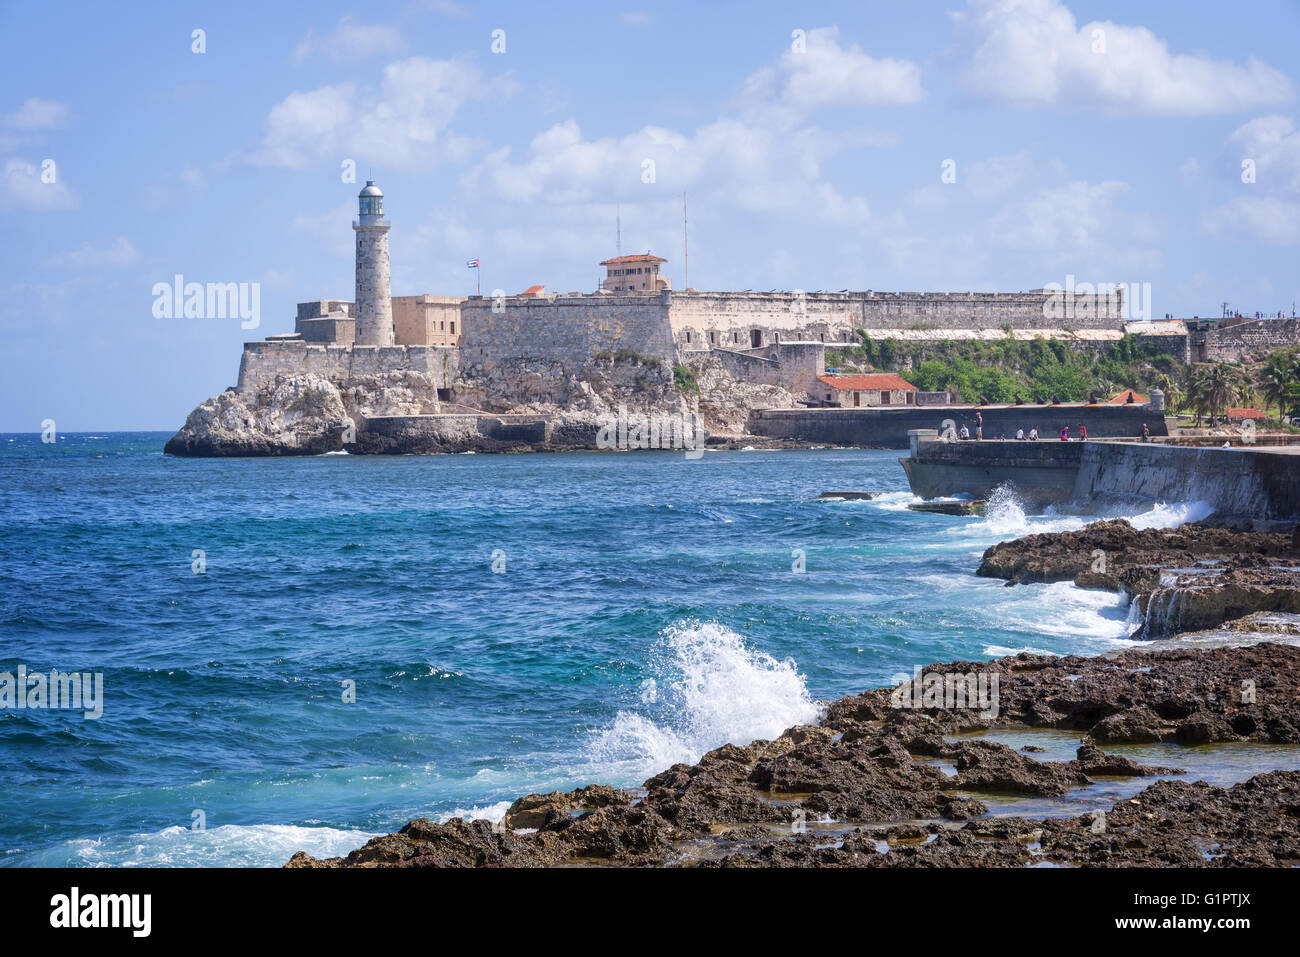 Havana Cuba Fort Stock Photo - Download Image Now - Havana, Cuba, Morro  Castle - Havana - iStock